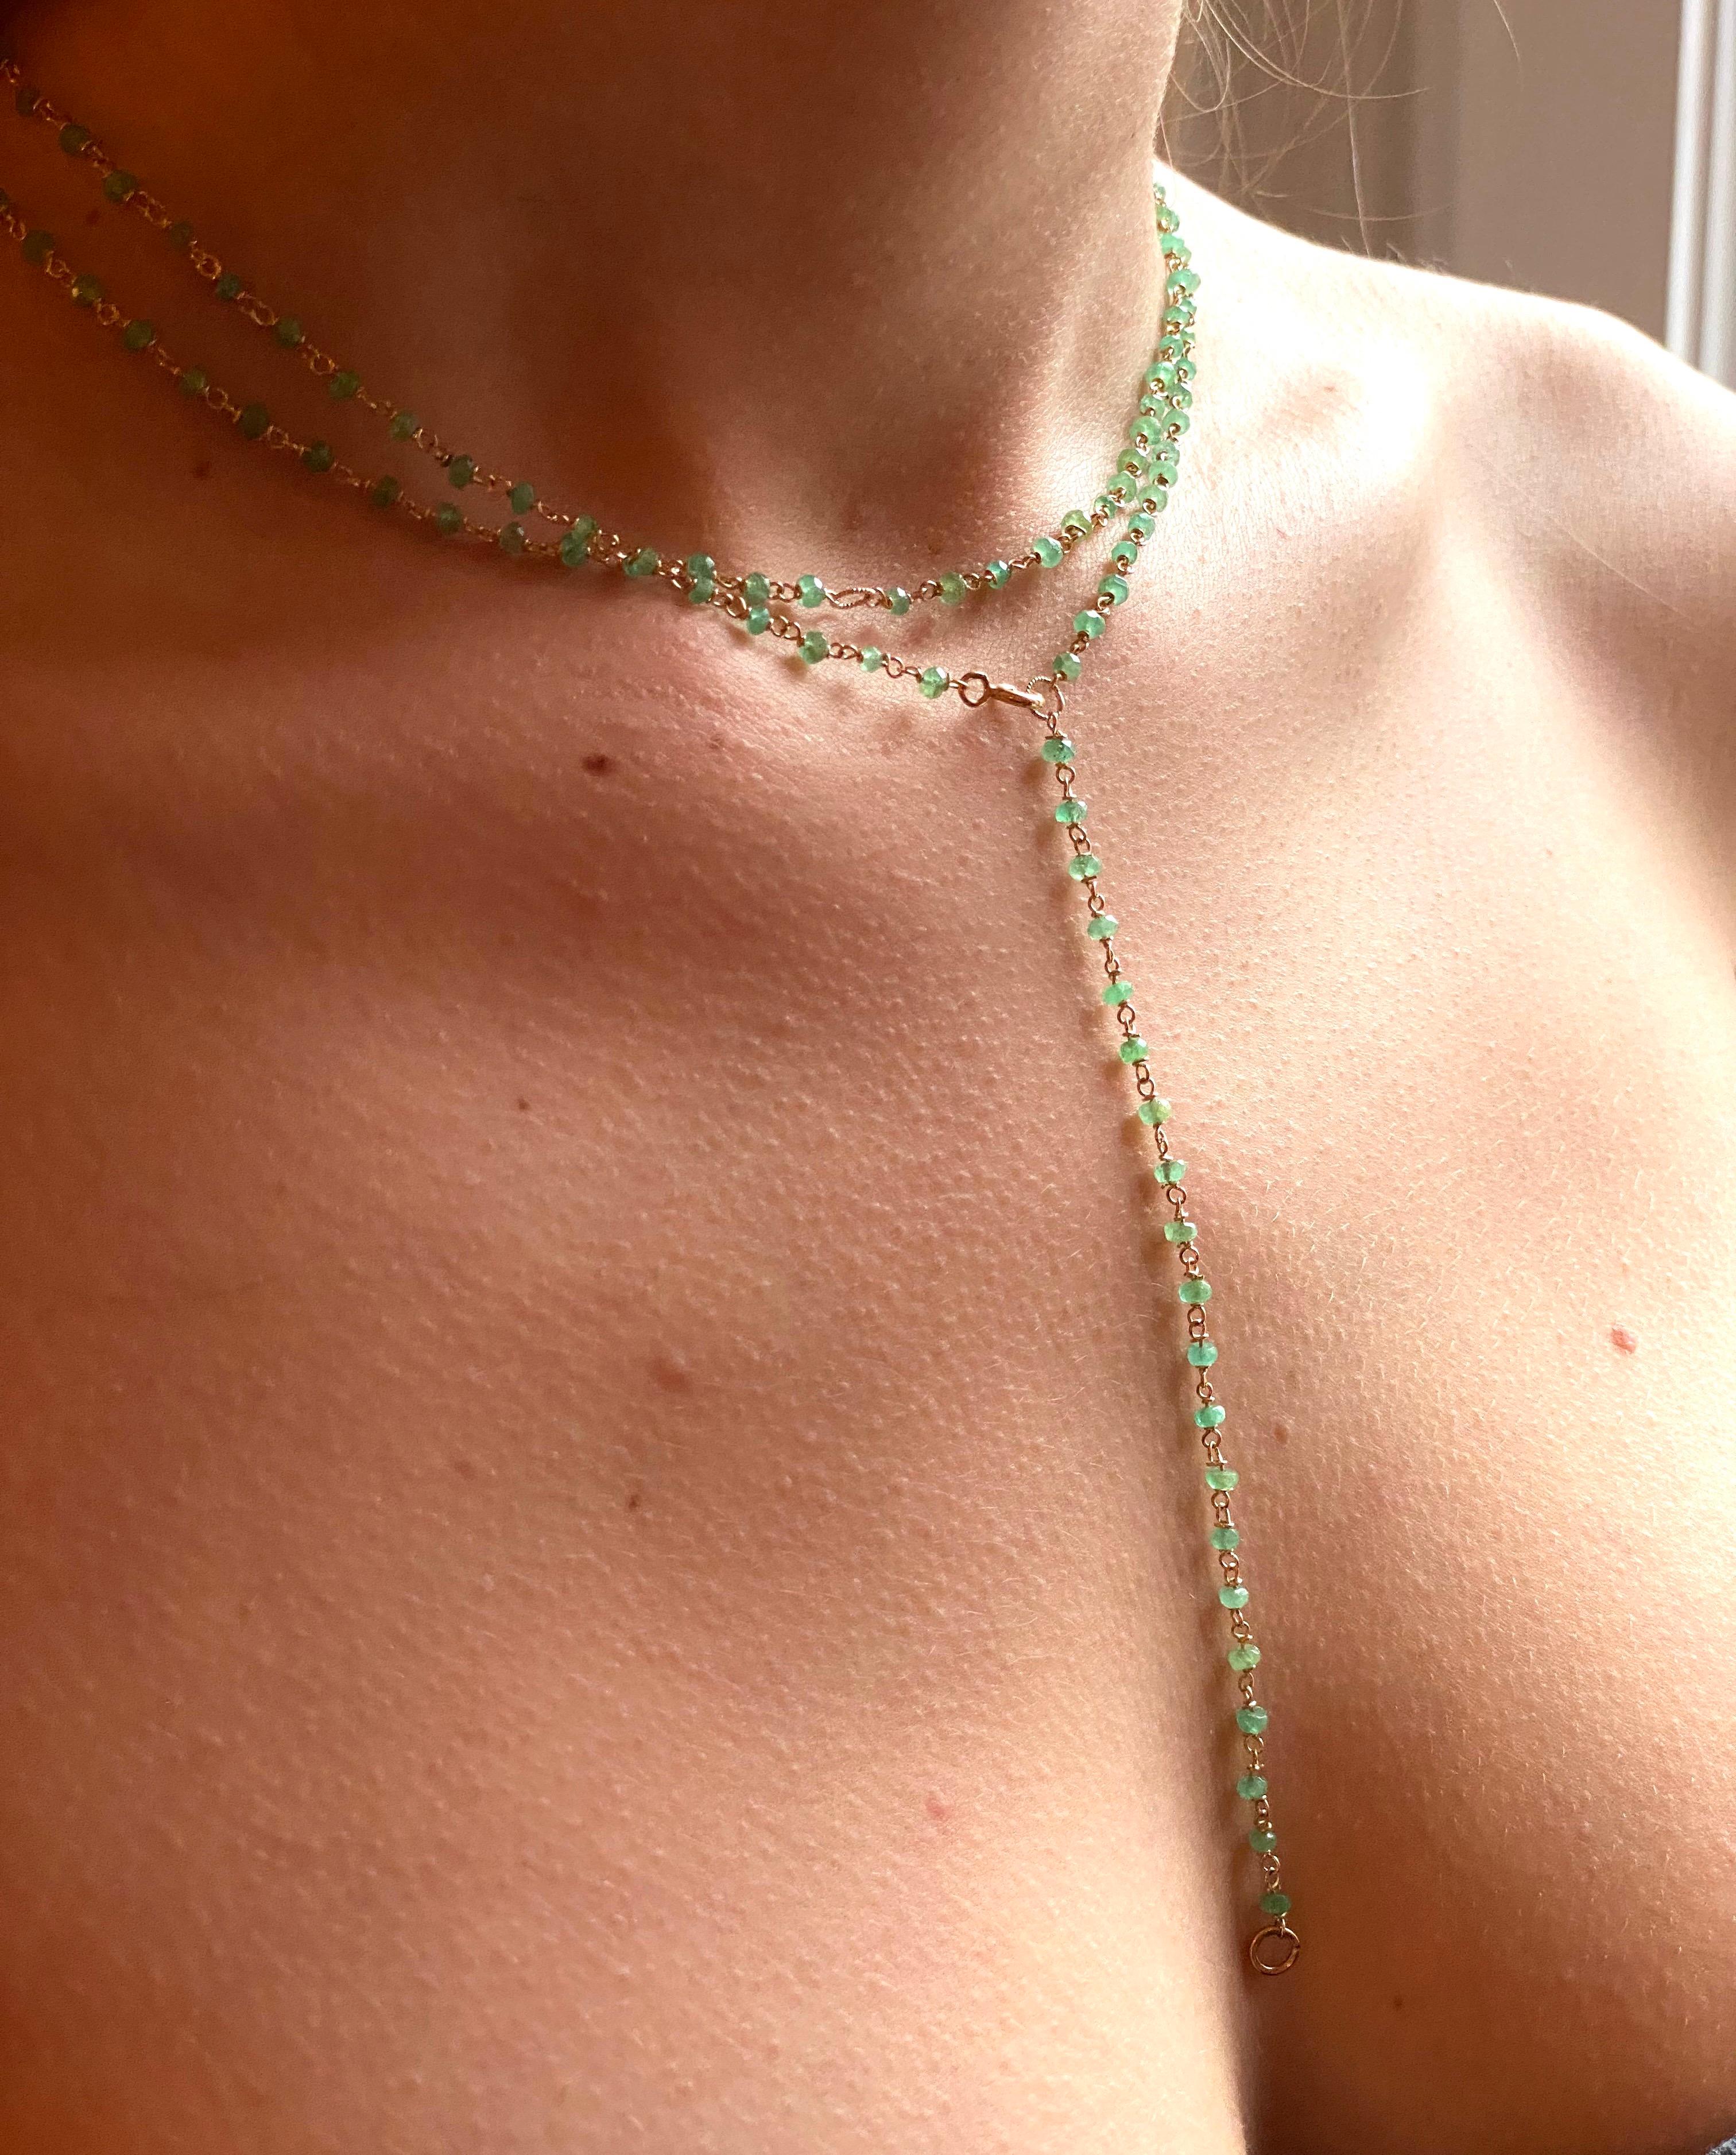 Art Deco Stil 45karat Smaragde 18 Karat Gelbgold Gedrehte Kette Perlenkette Sautoir.  Alle 22 Smaragde gibt es ein handgefertigtes, gedrehtes Glied.  
abmessungen : 39,37 Zoll . cm. 100.
Der Smaragd ist bekannt als der 